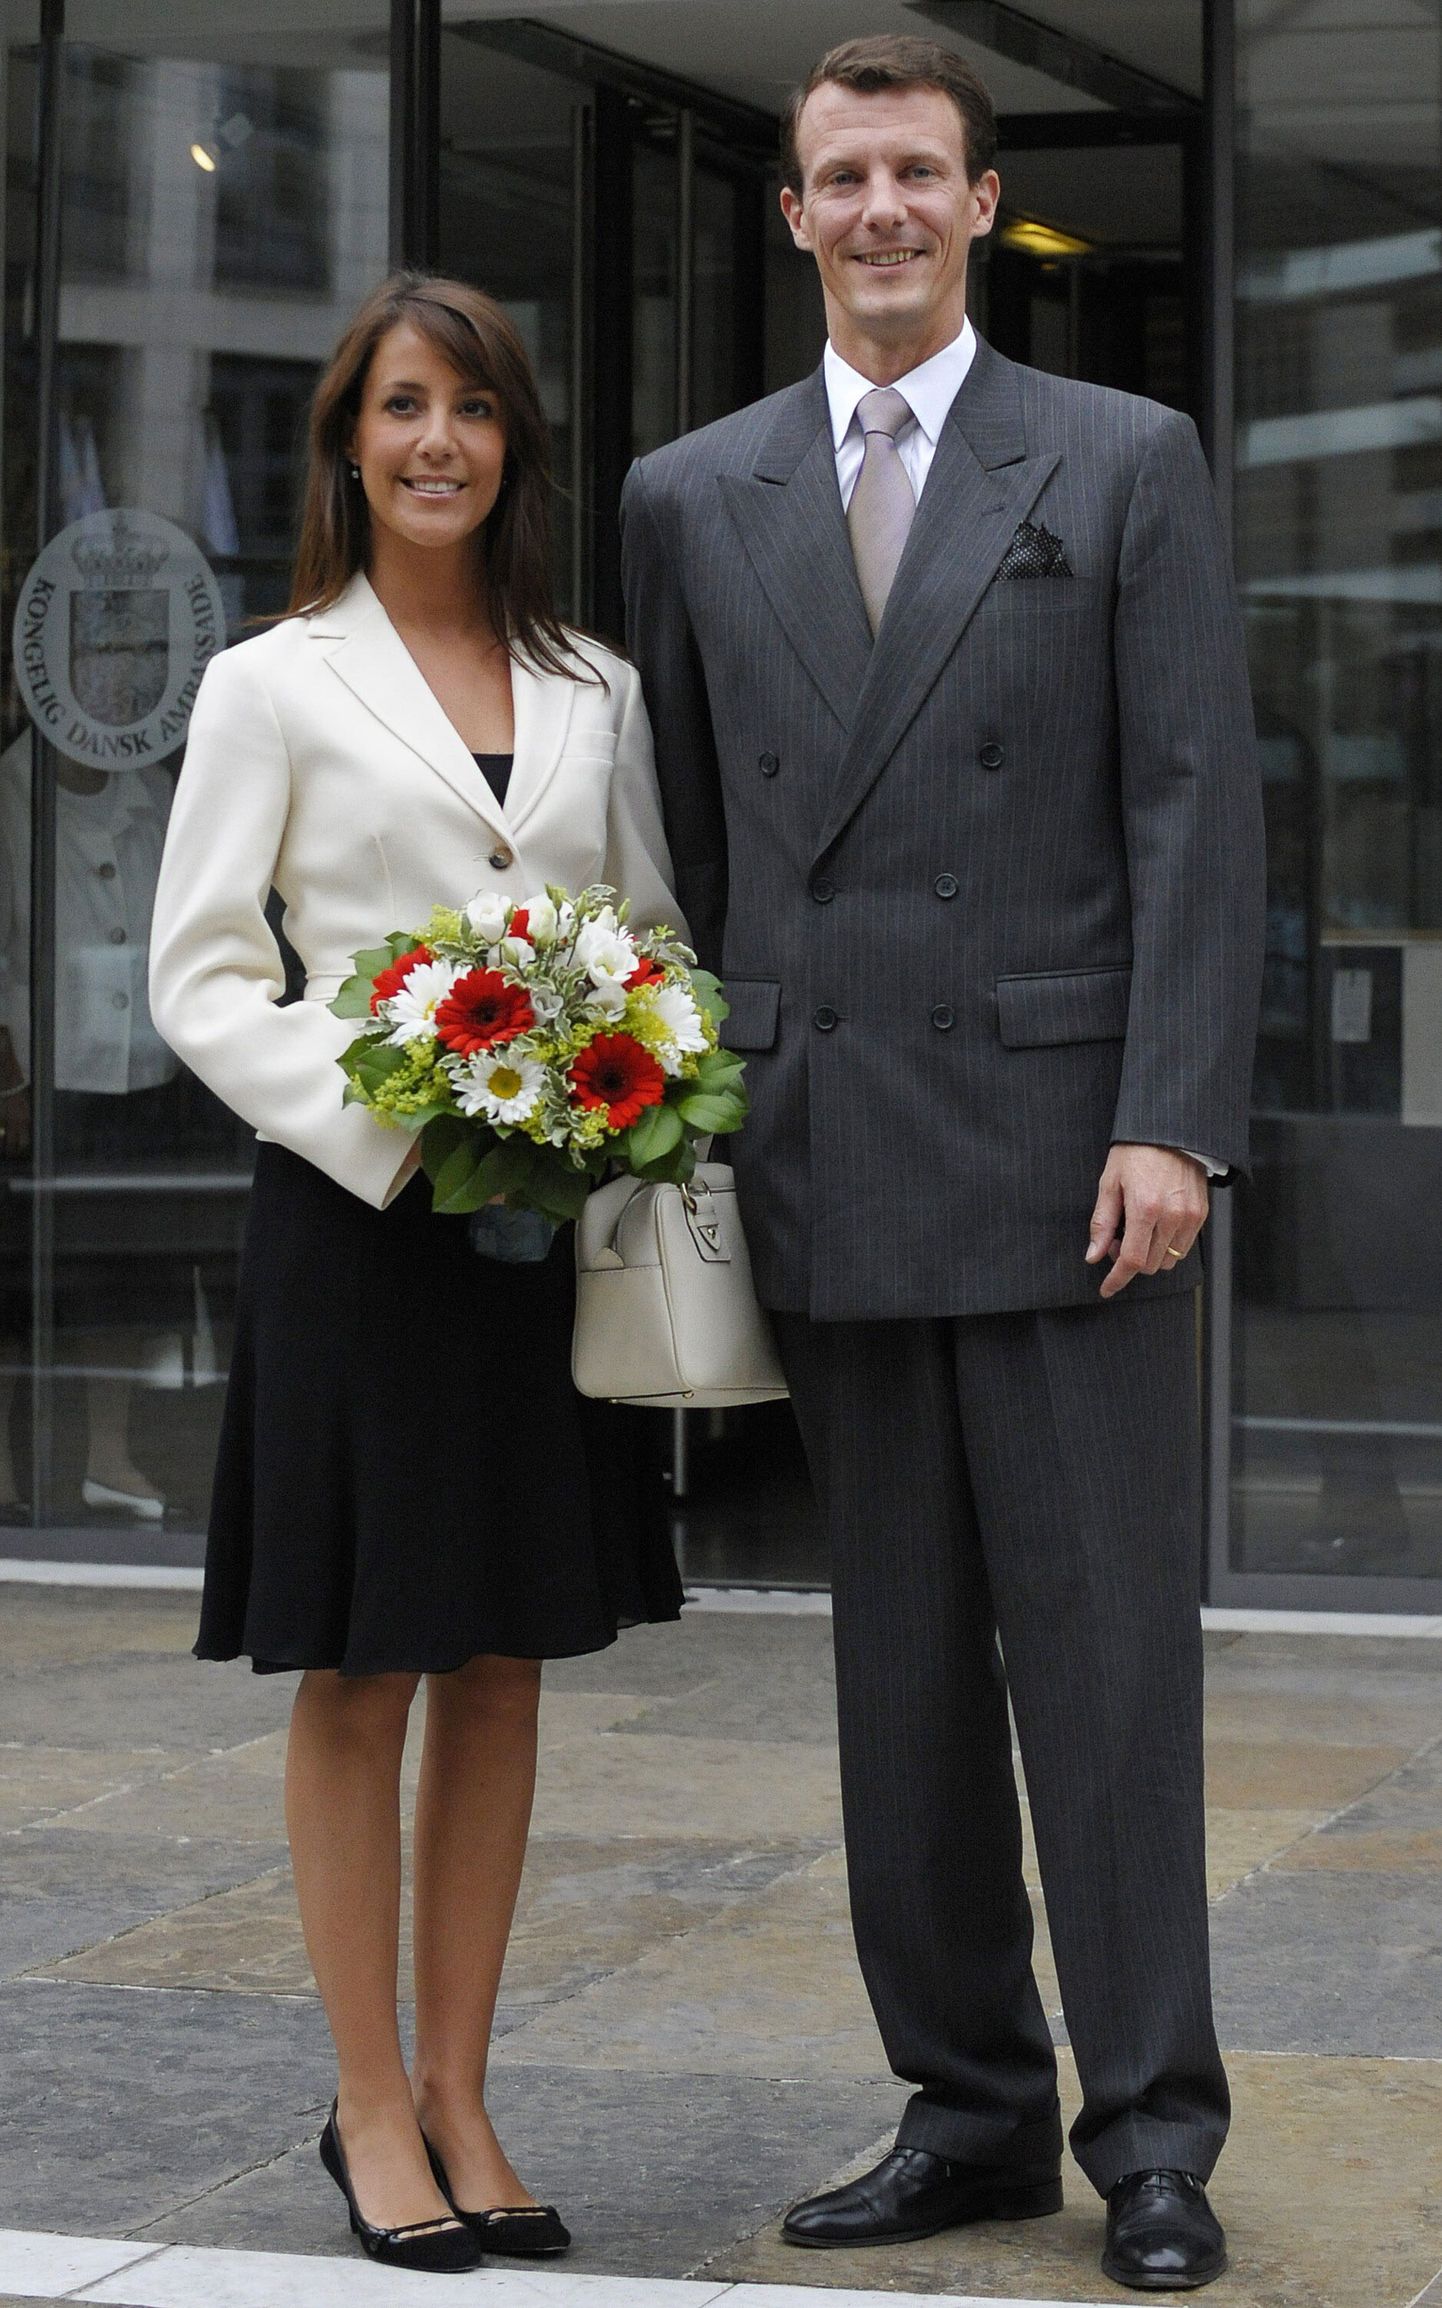 Taani prints Joachim ja printsess Marie